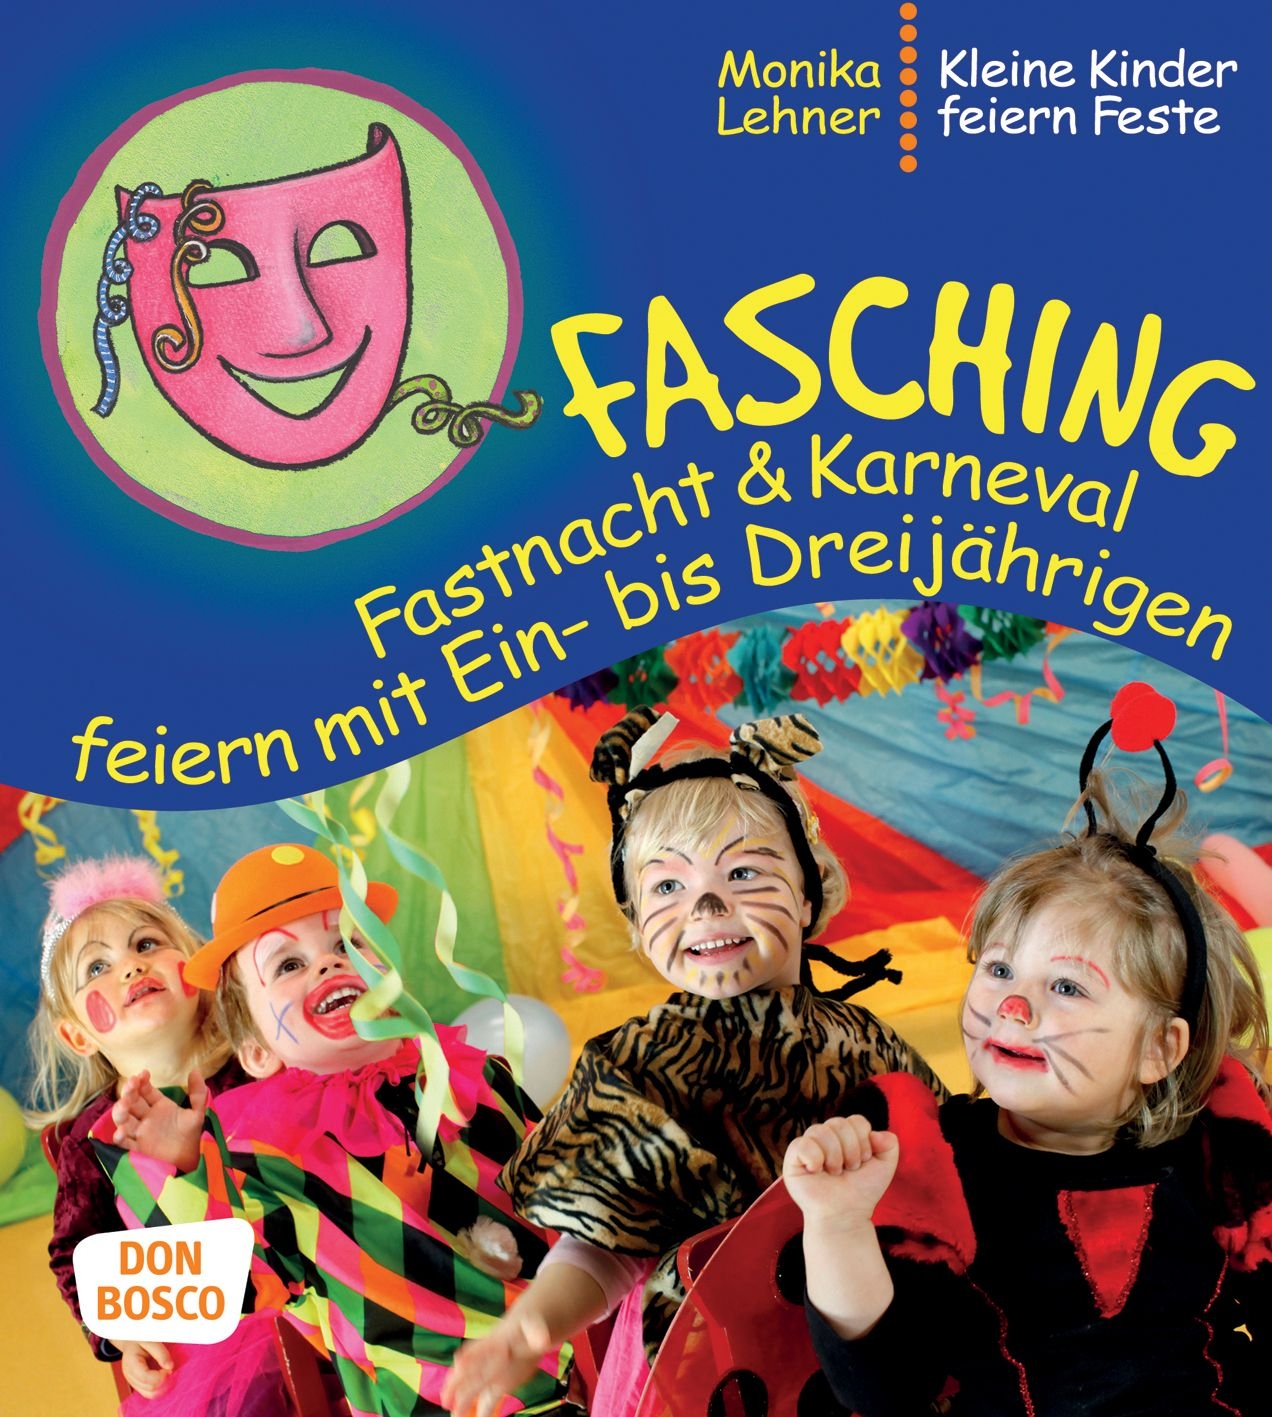 Fasching, Fastnacht & Karneval feiern mit 1-3 J.